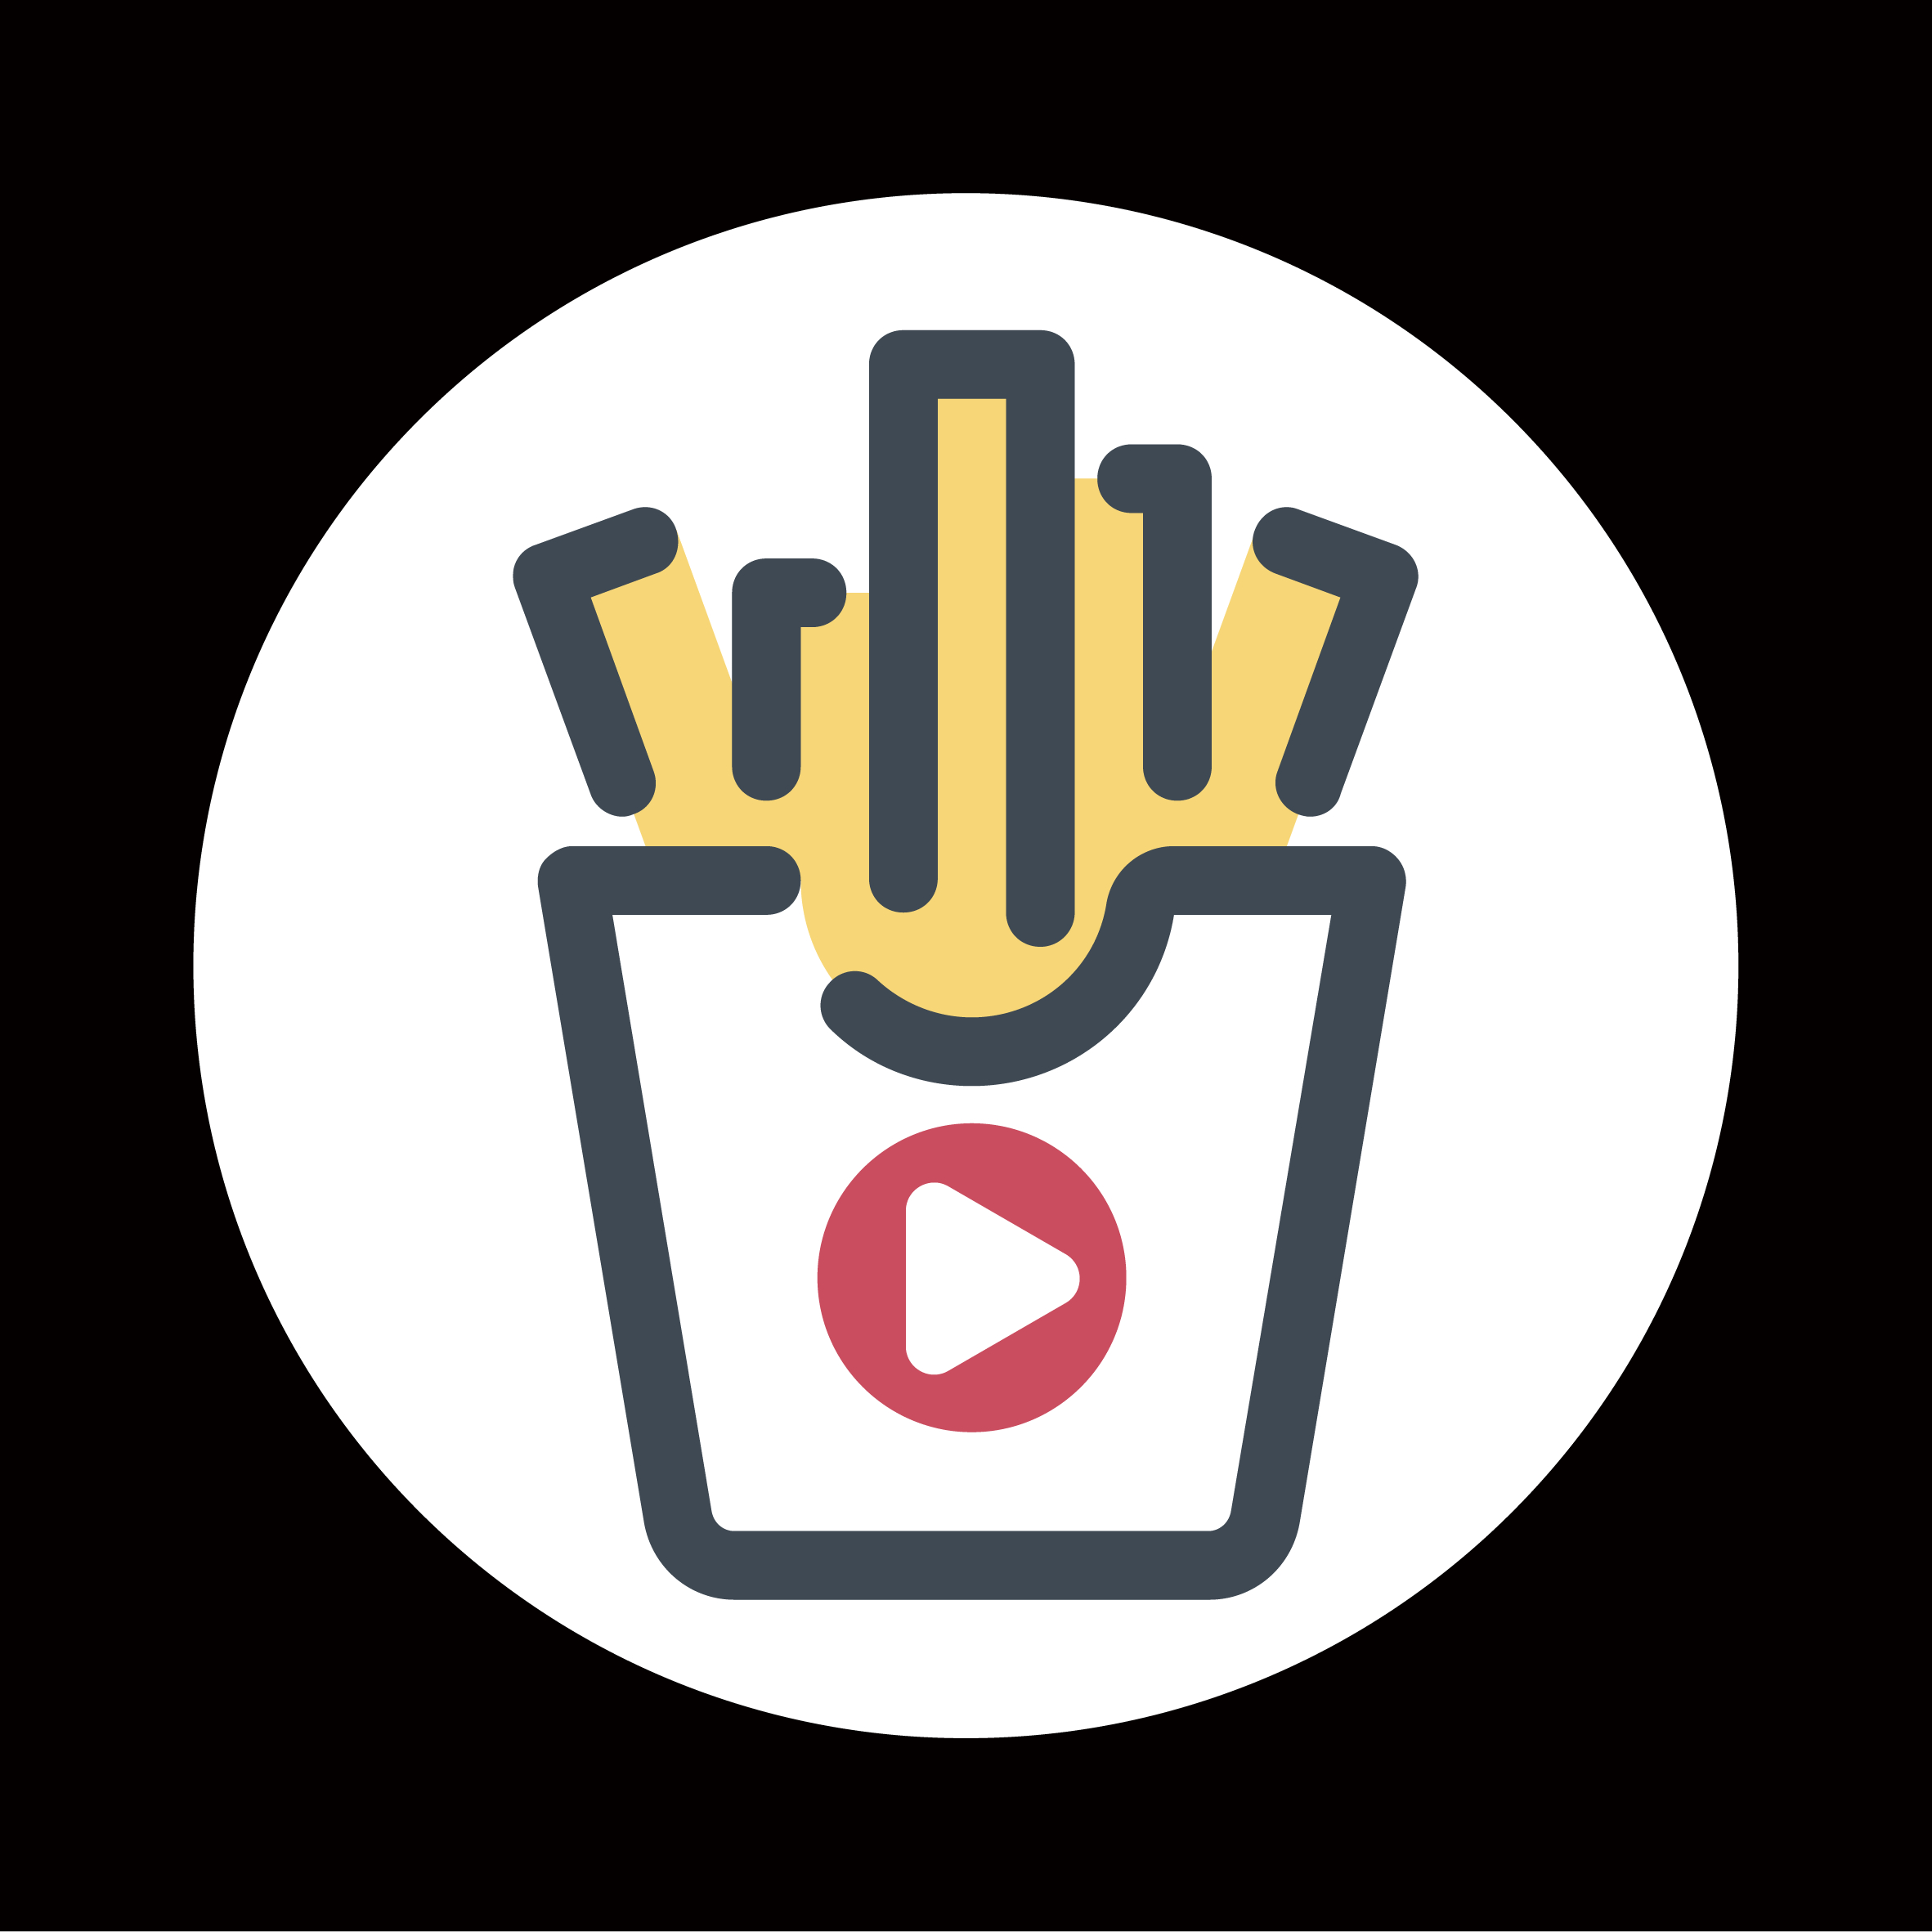 豆瓣电影 logo图片